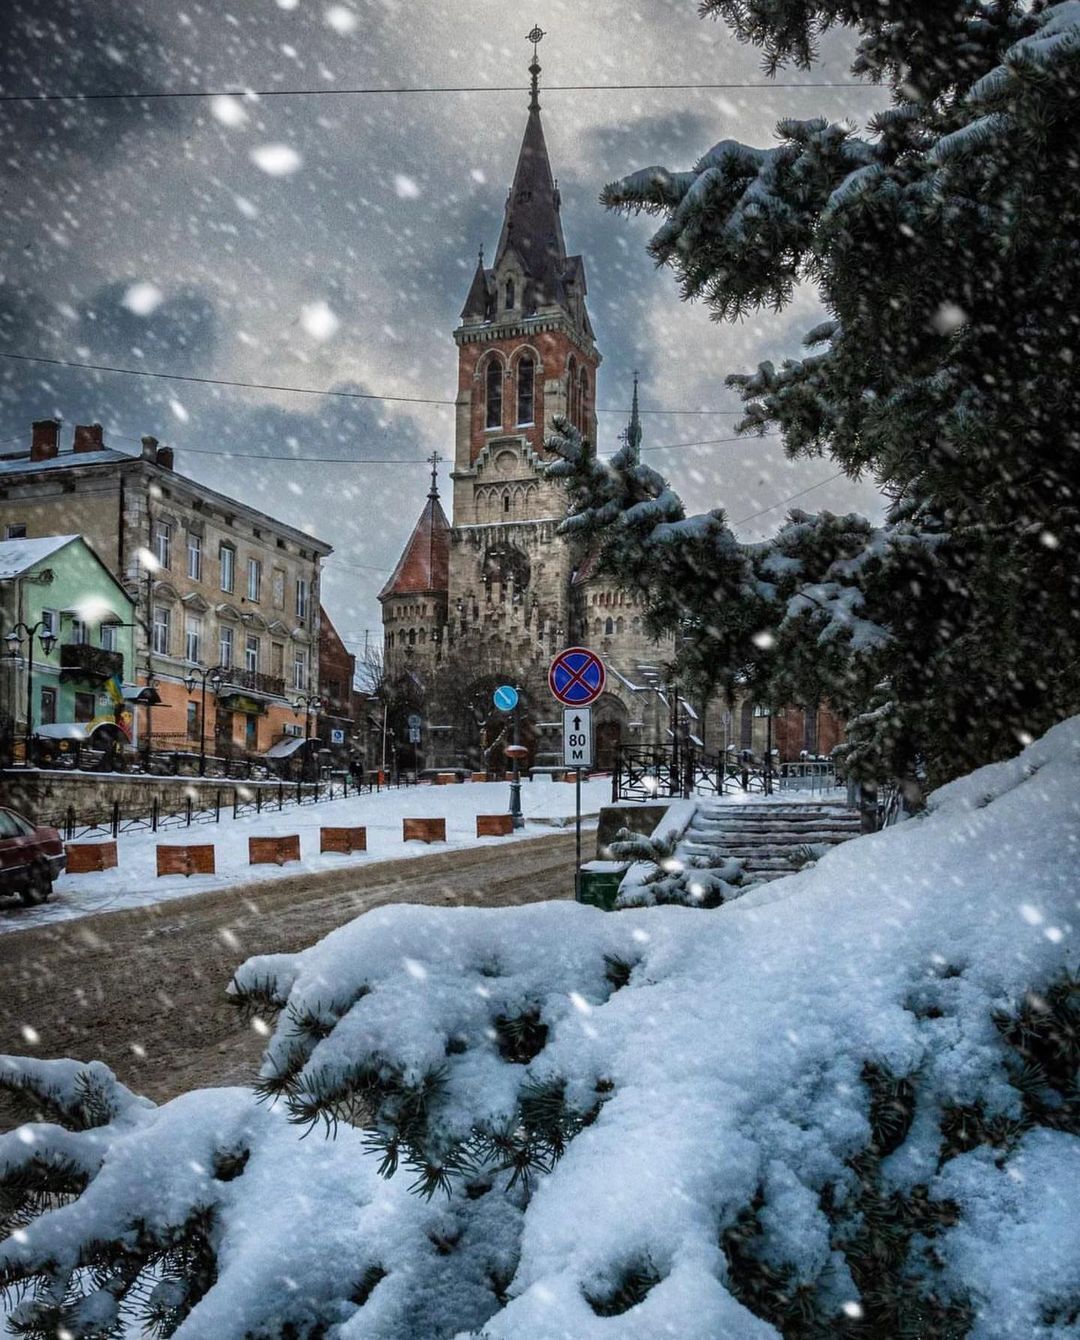 Ловите идеи для зимнего отдыха в Украине. Где поразвлечься и оздоровиться в течение еще двух месяцев